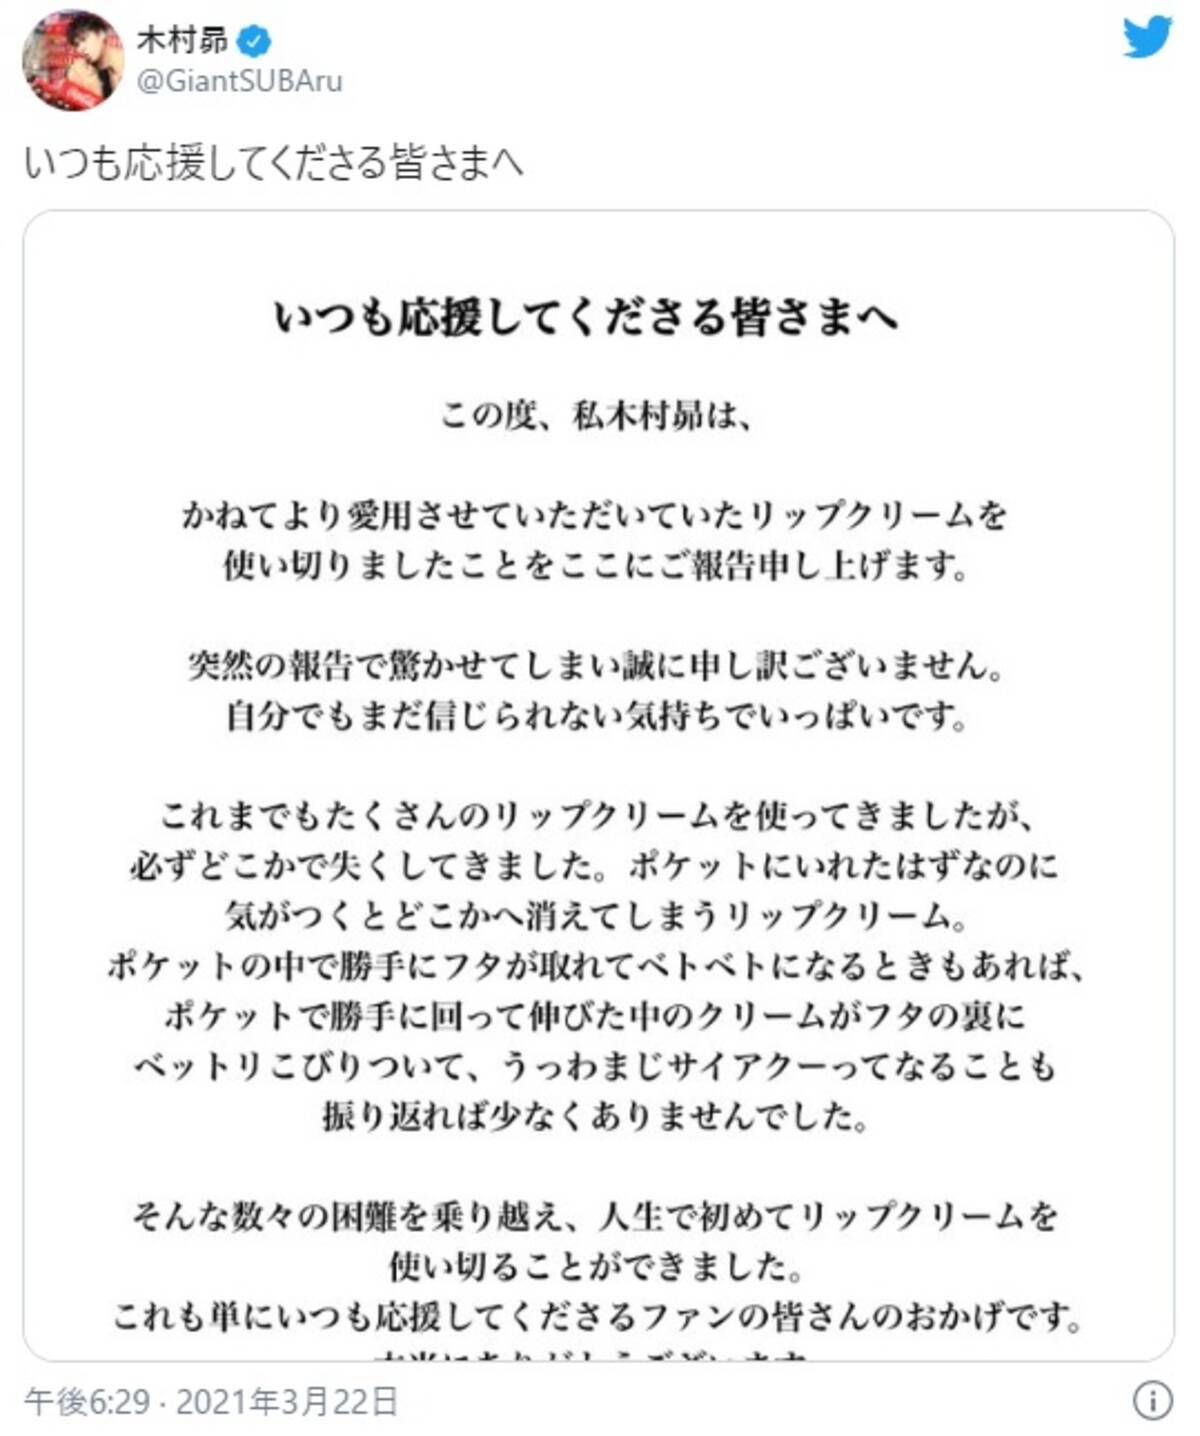 人気声優の木村昴が いつも応援してくださる皆さまへ と意味深投稿 45万もいいねを集めた ご報告 の内容は 21年3月23日 エキサイトニュース